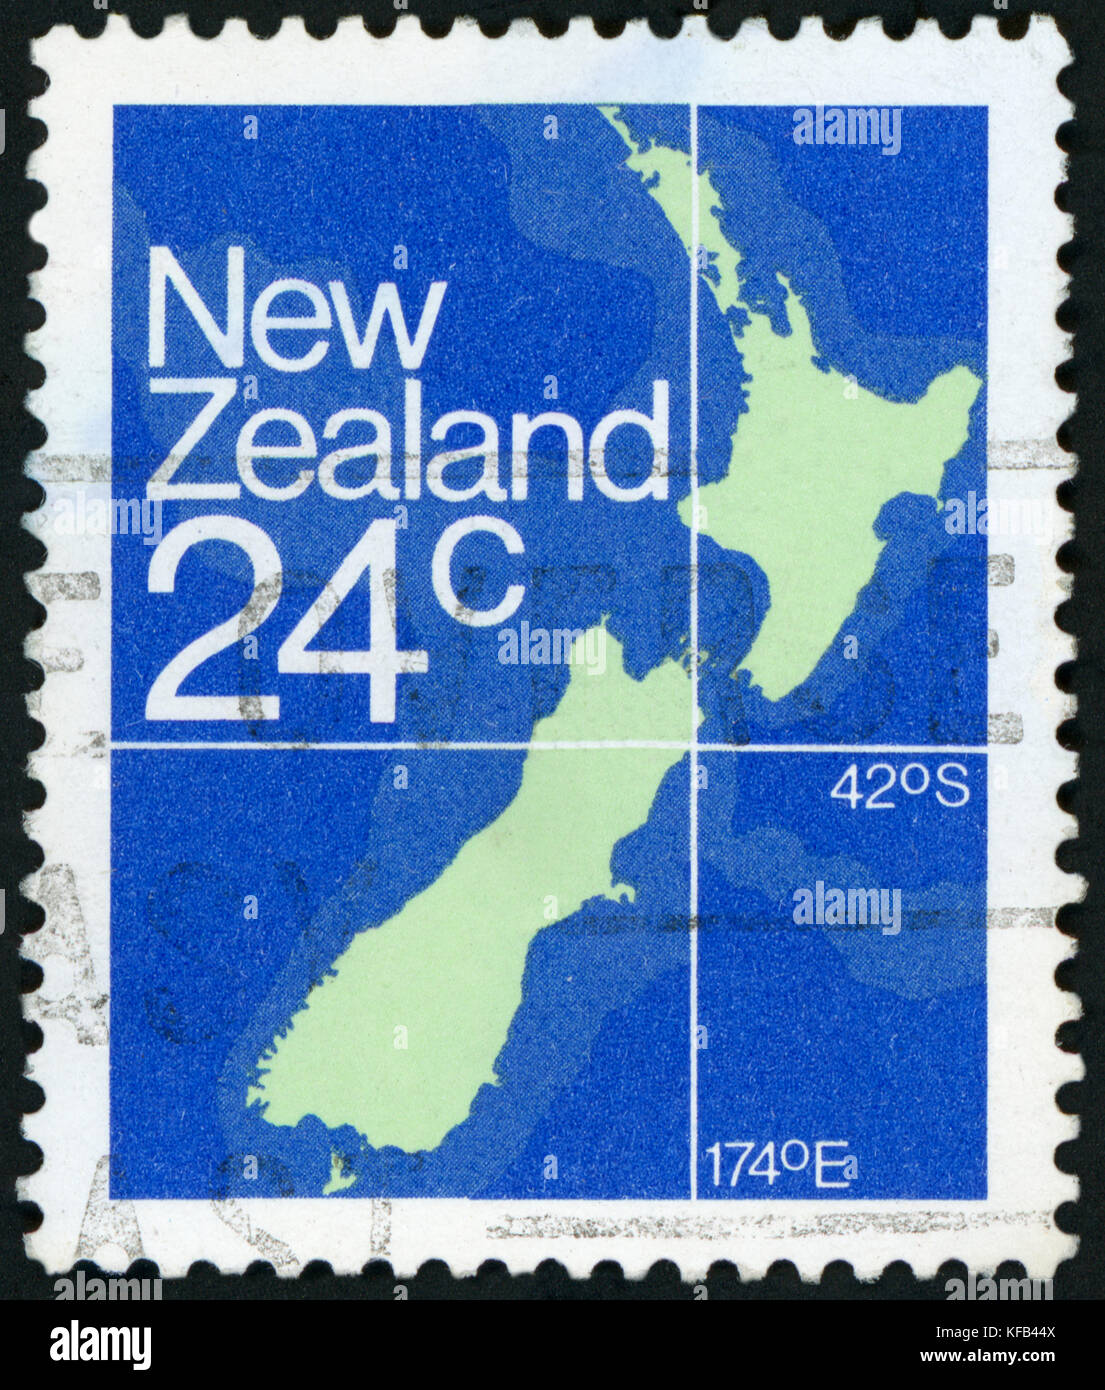 NOUVELLE-ZÉLANDE - VERS 1982 : un timbre imprimé en Nouvelle-Zélande montre la carte de la Nouvelle-Zélande, vers 1982. Banque D'Images